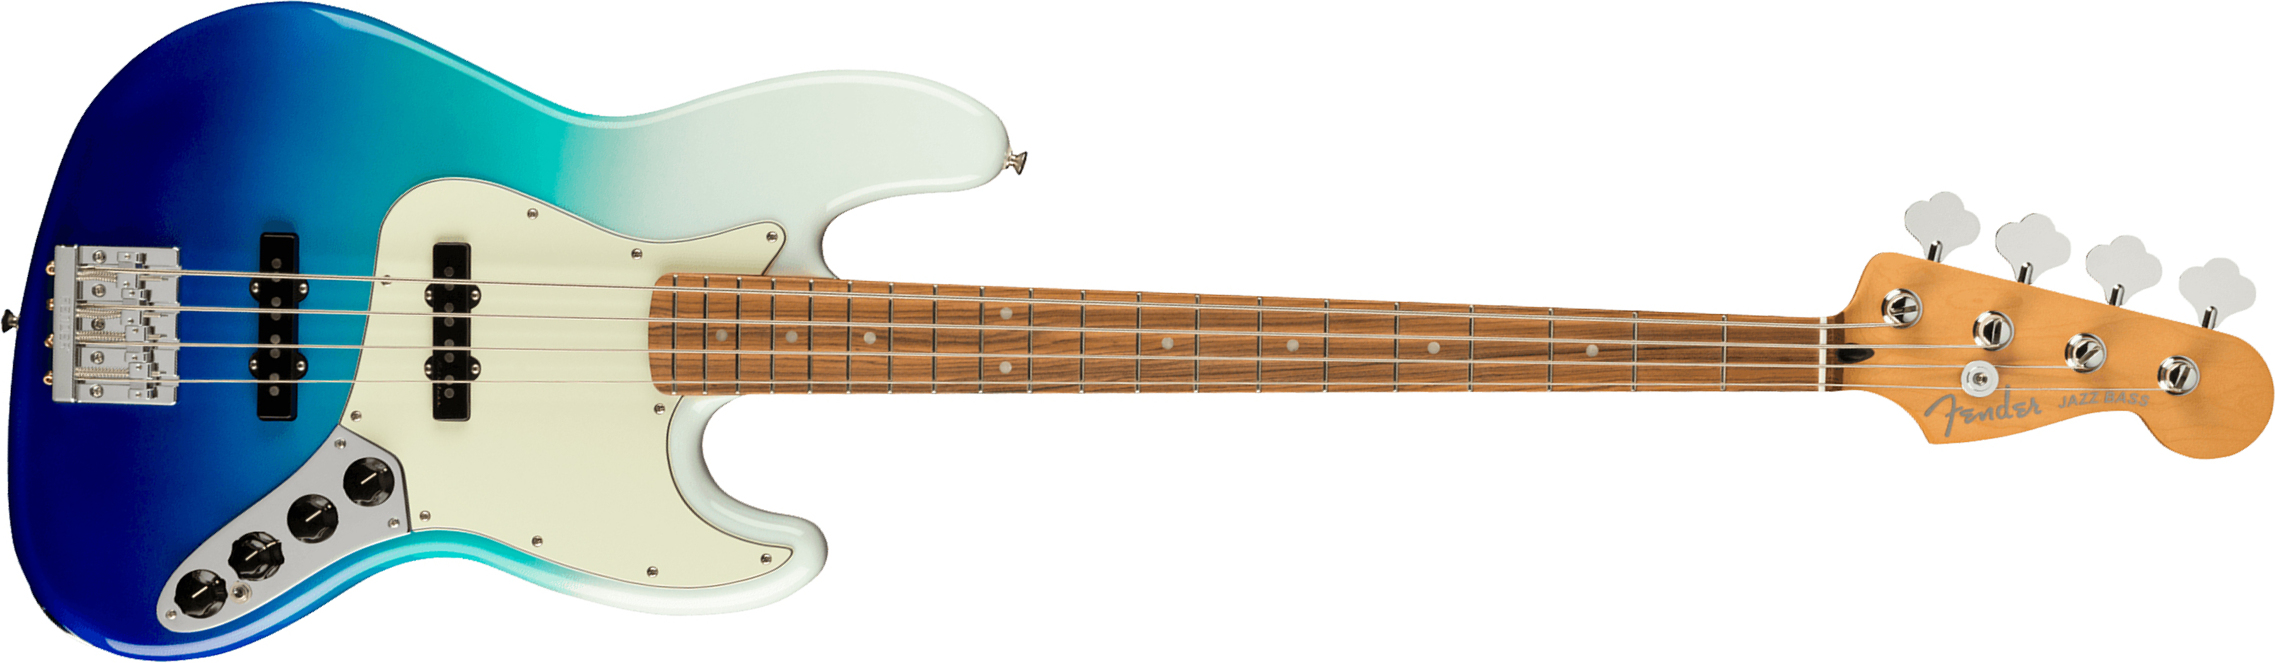 Fender Jazz Bass Player Plus Mex Active Pf - Belair Blue - Bajo eléctrico de cuerpo sólido - Main picture